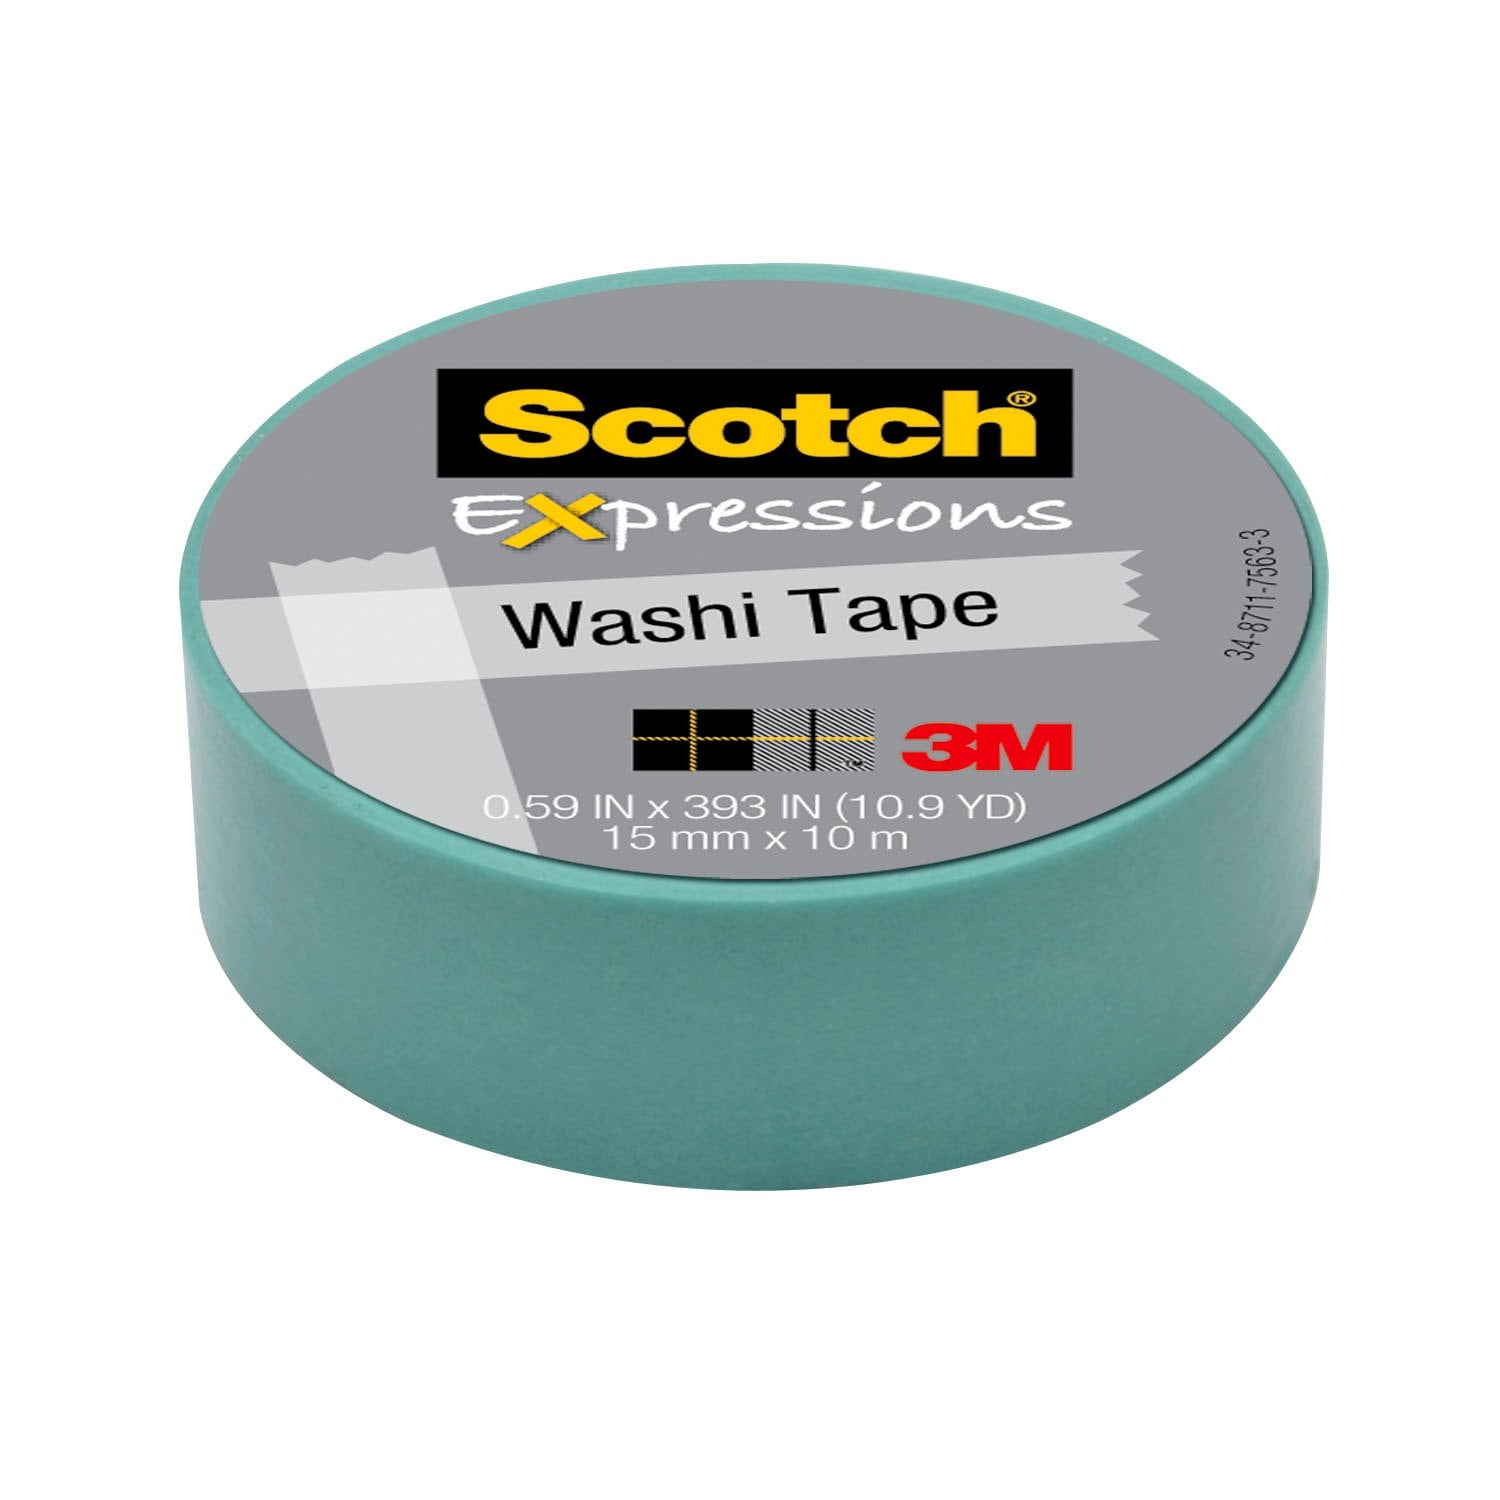 7100019584 - Scotch Expressions Washi Tape C314-BLU2, .59 in x 393 in (15 mm x 10 m)
Pastel Blue